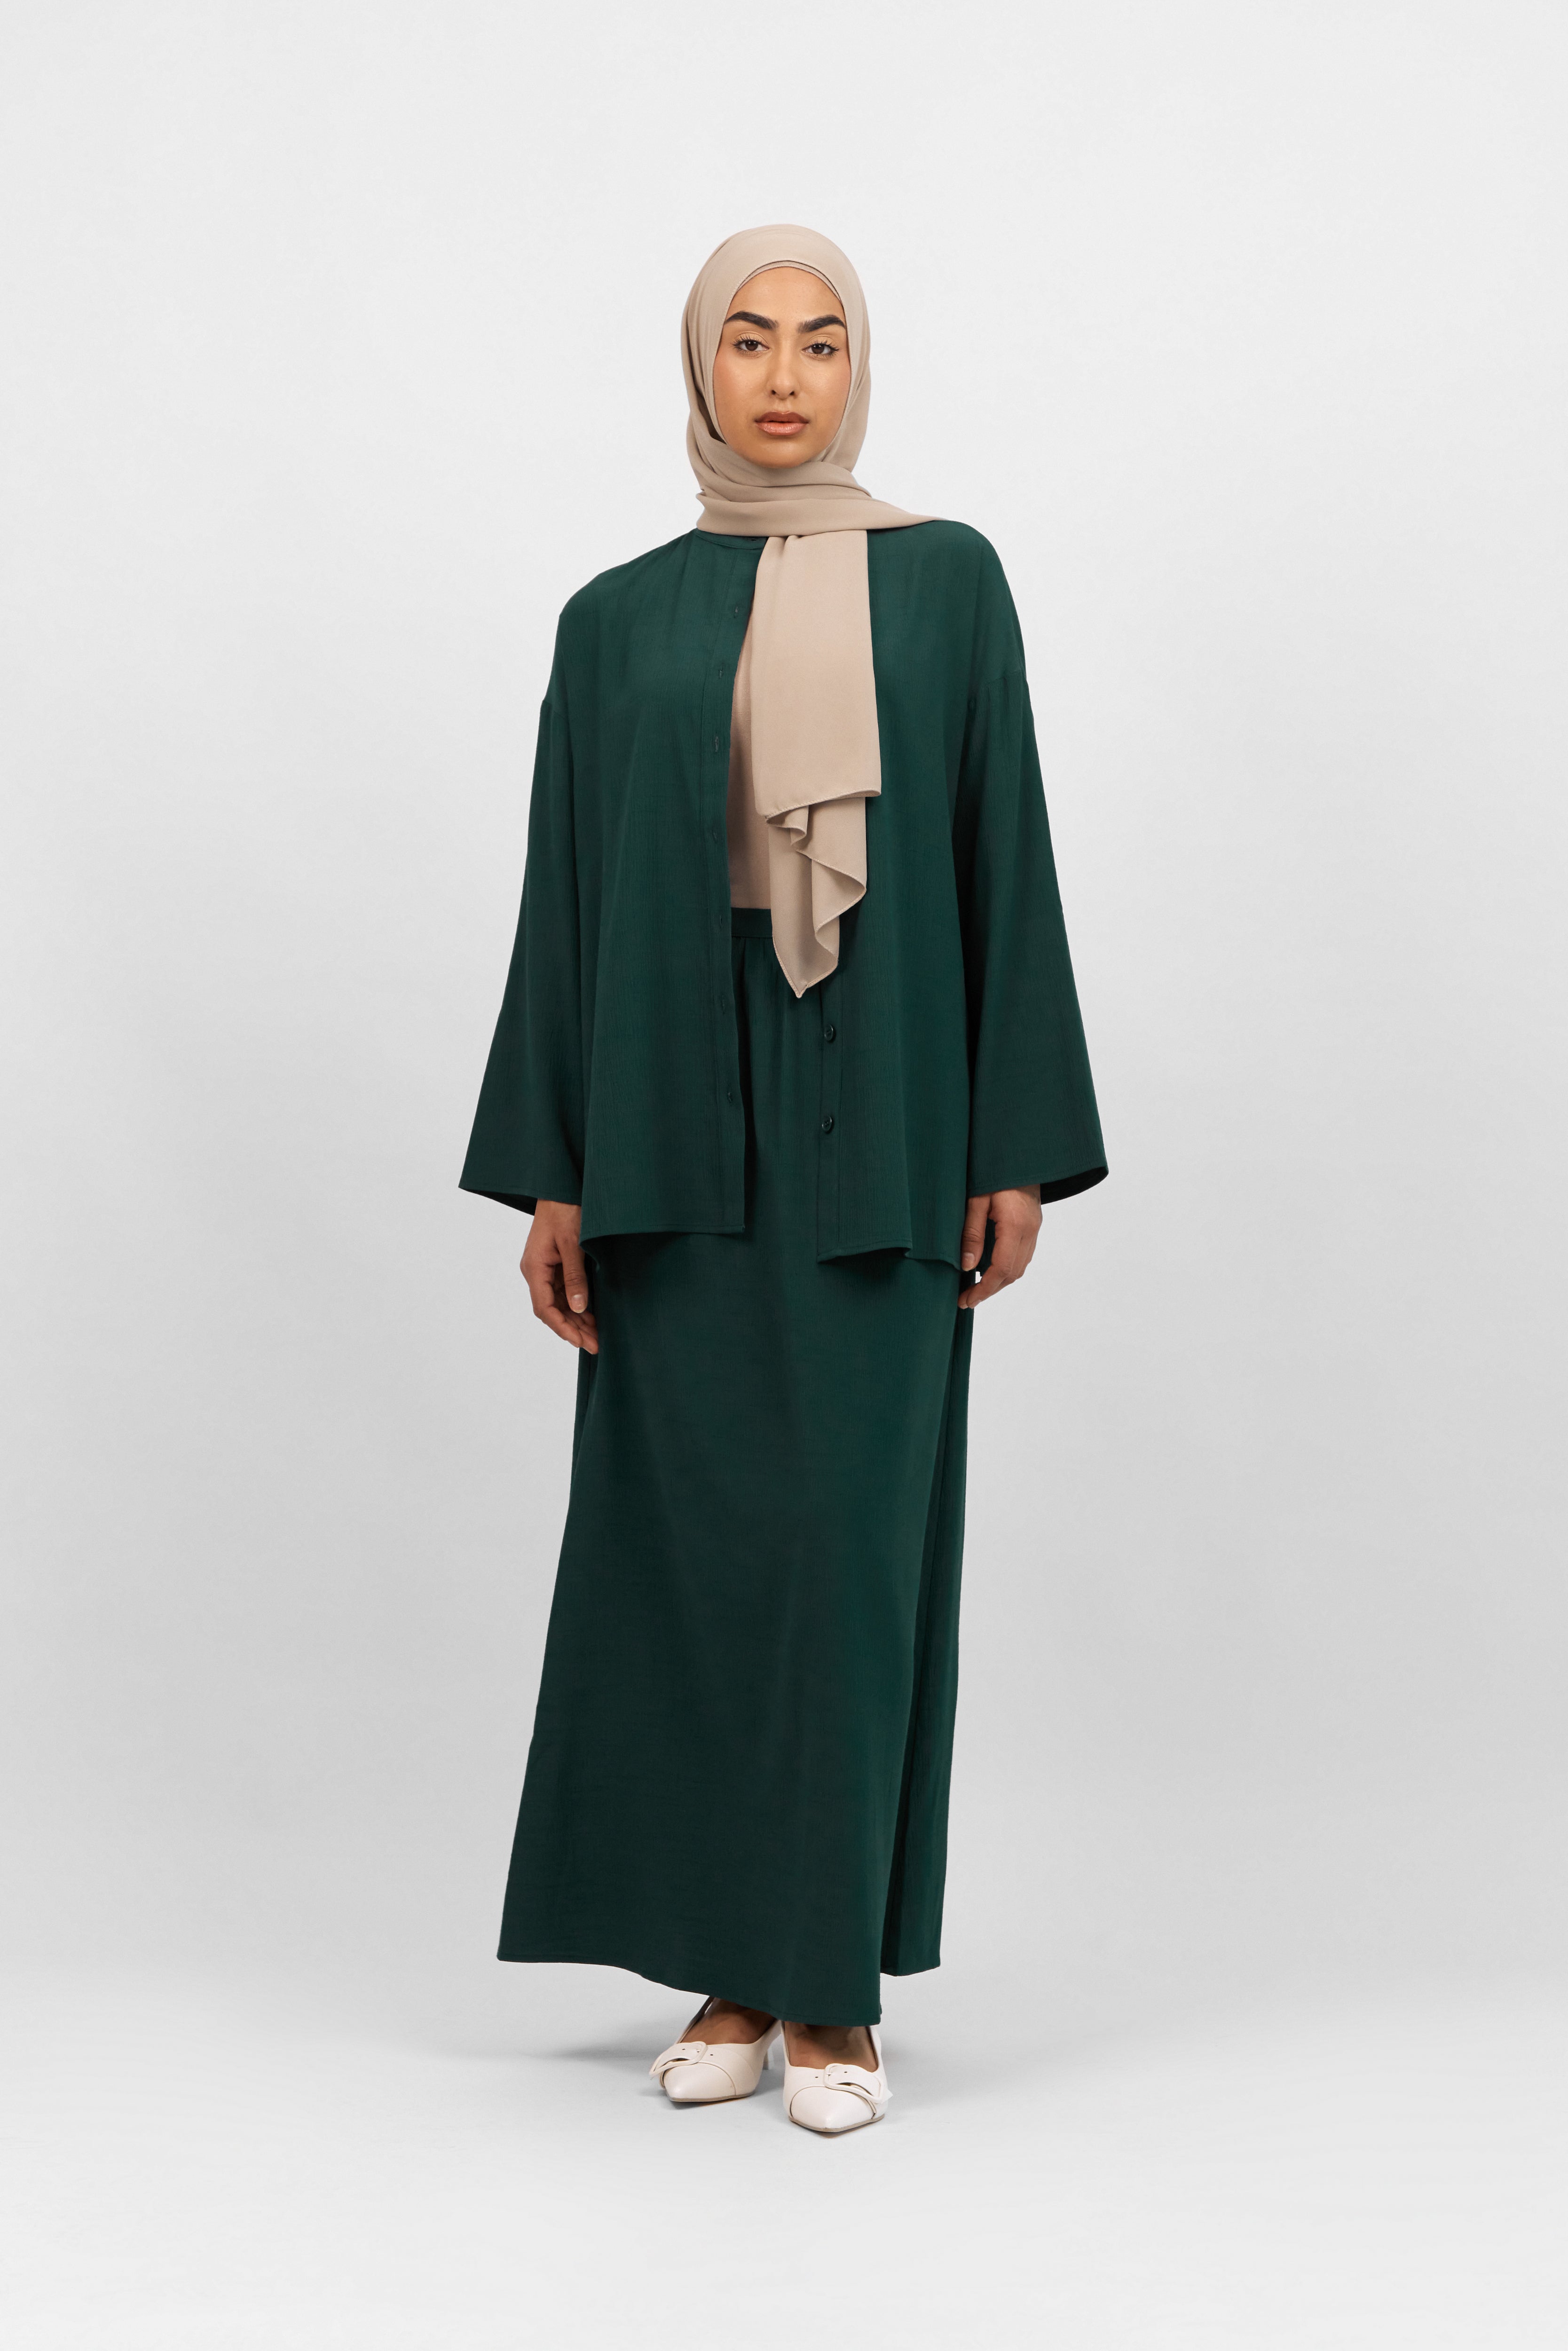 AE - Flowy Maxi Skirt - Emerald